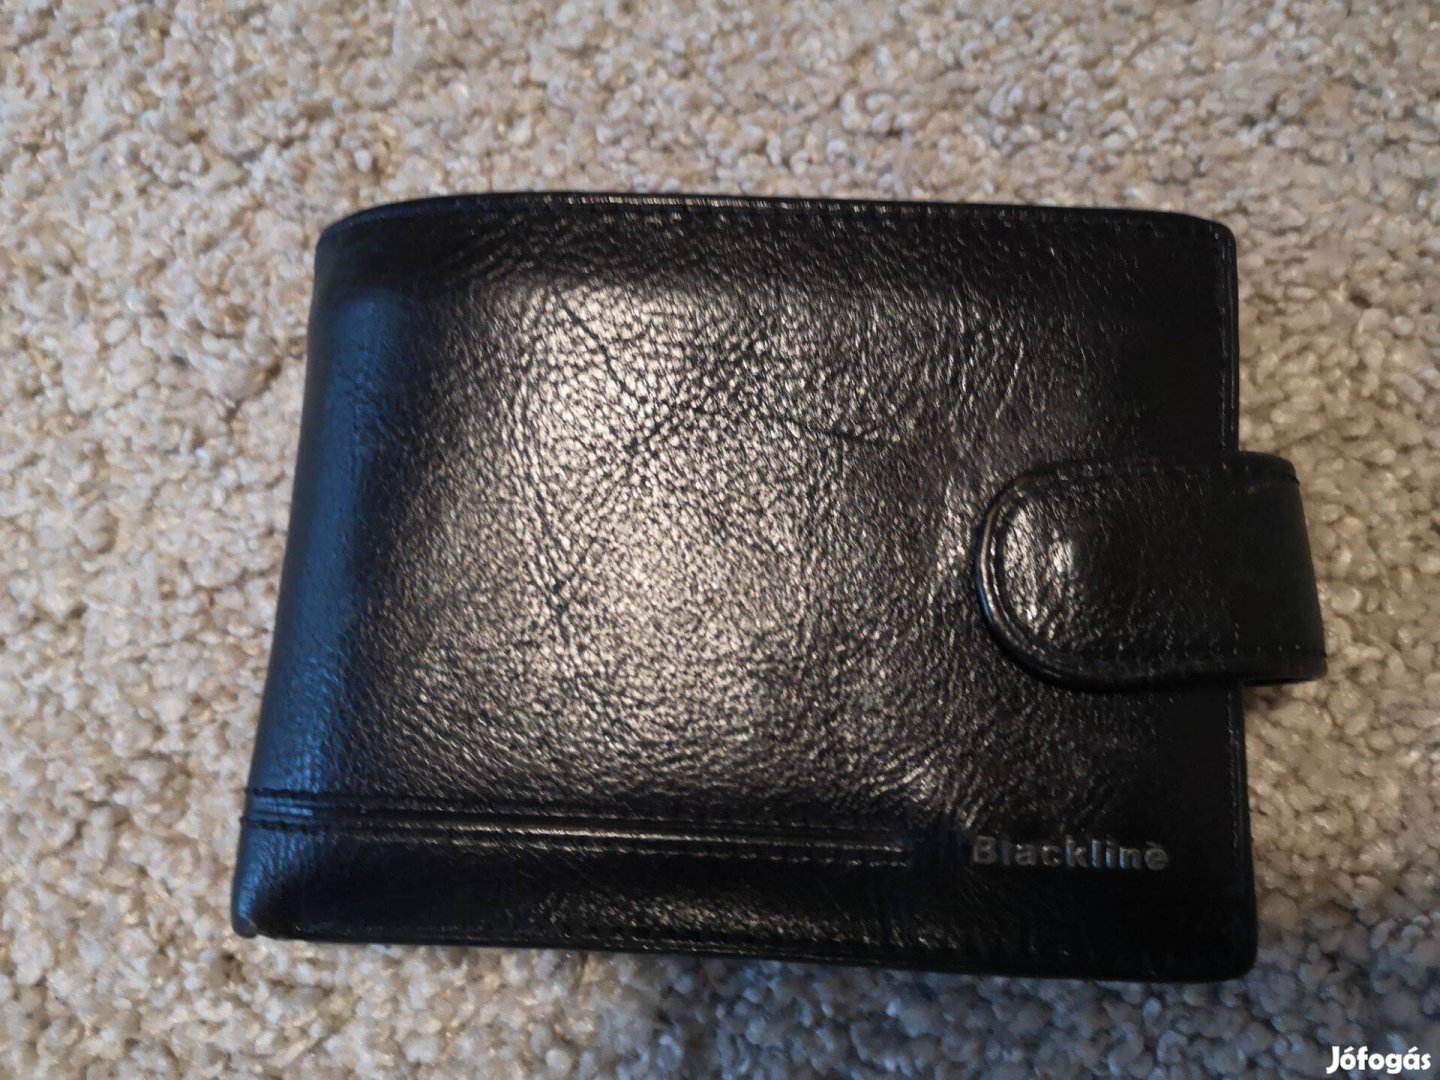 Blackline férfi fekete bőrpénztárca keveset használt eladó!